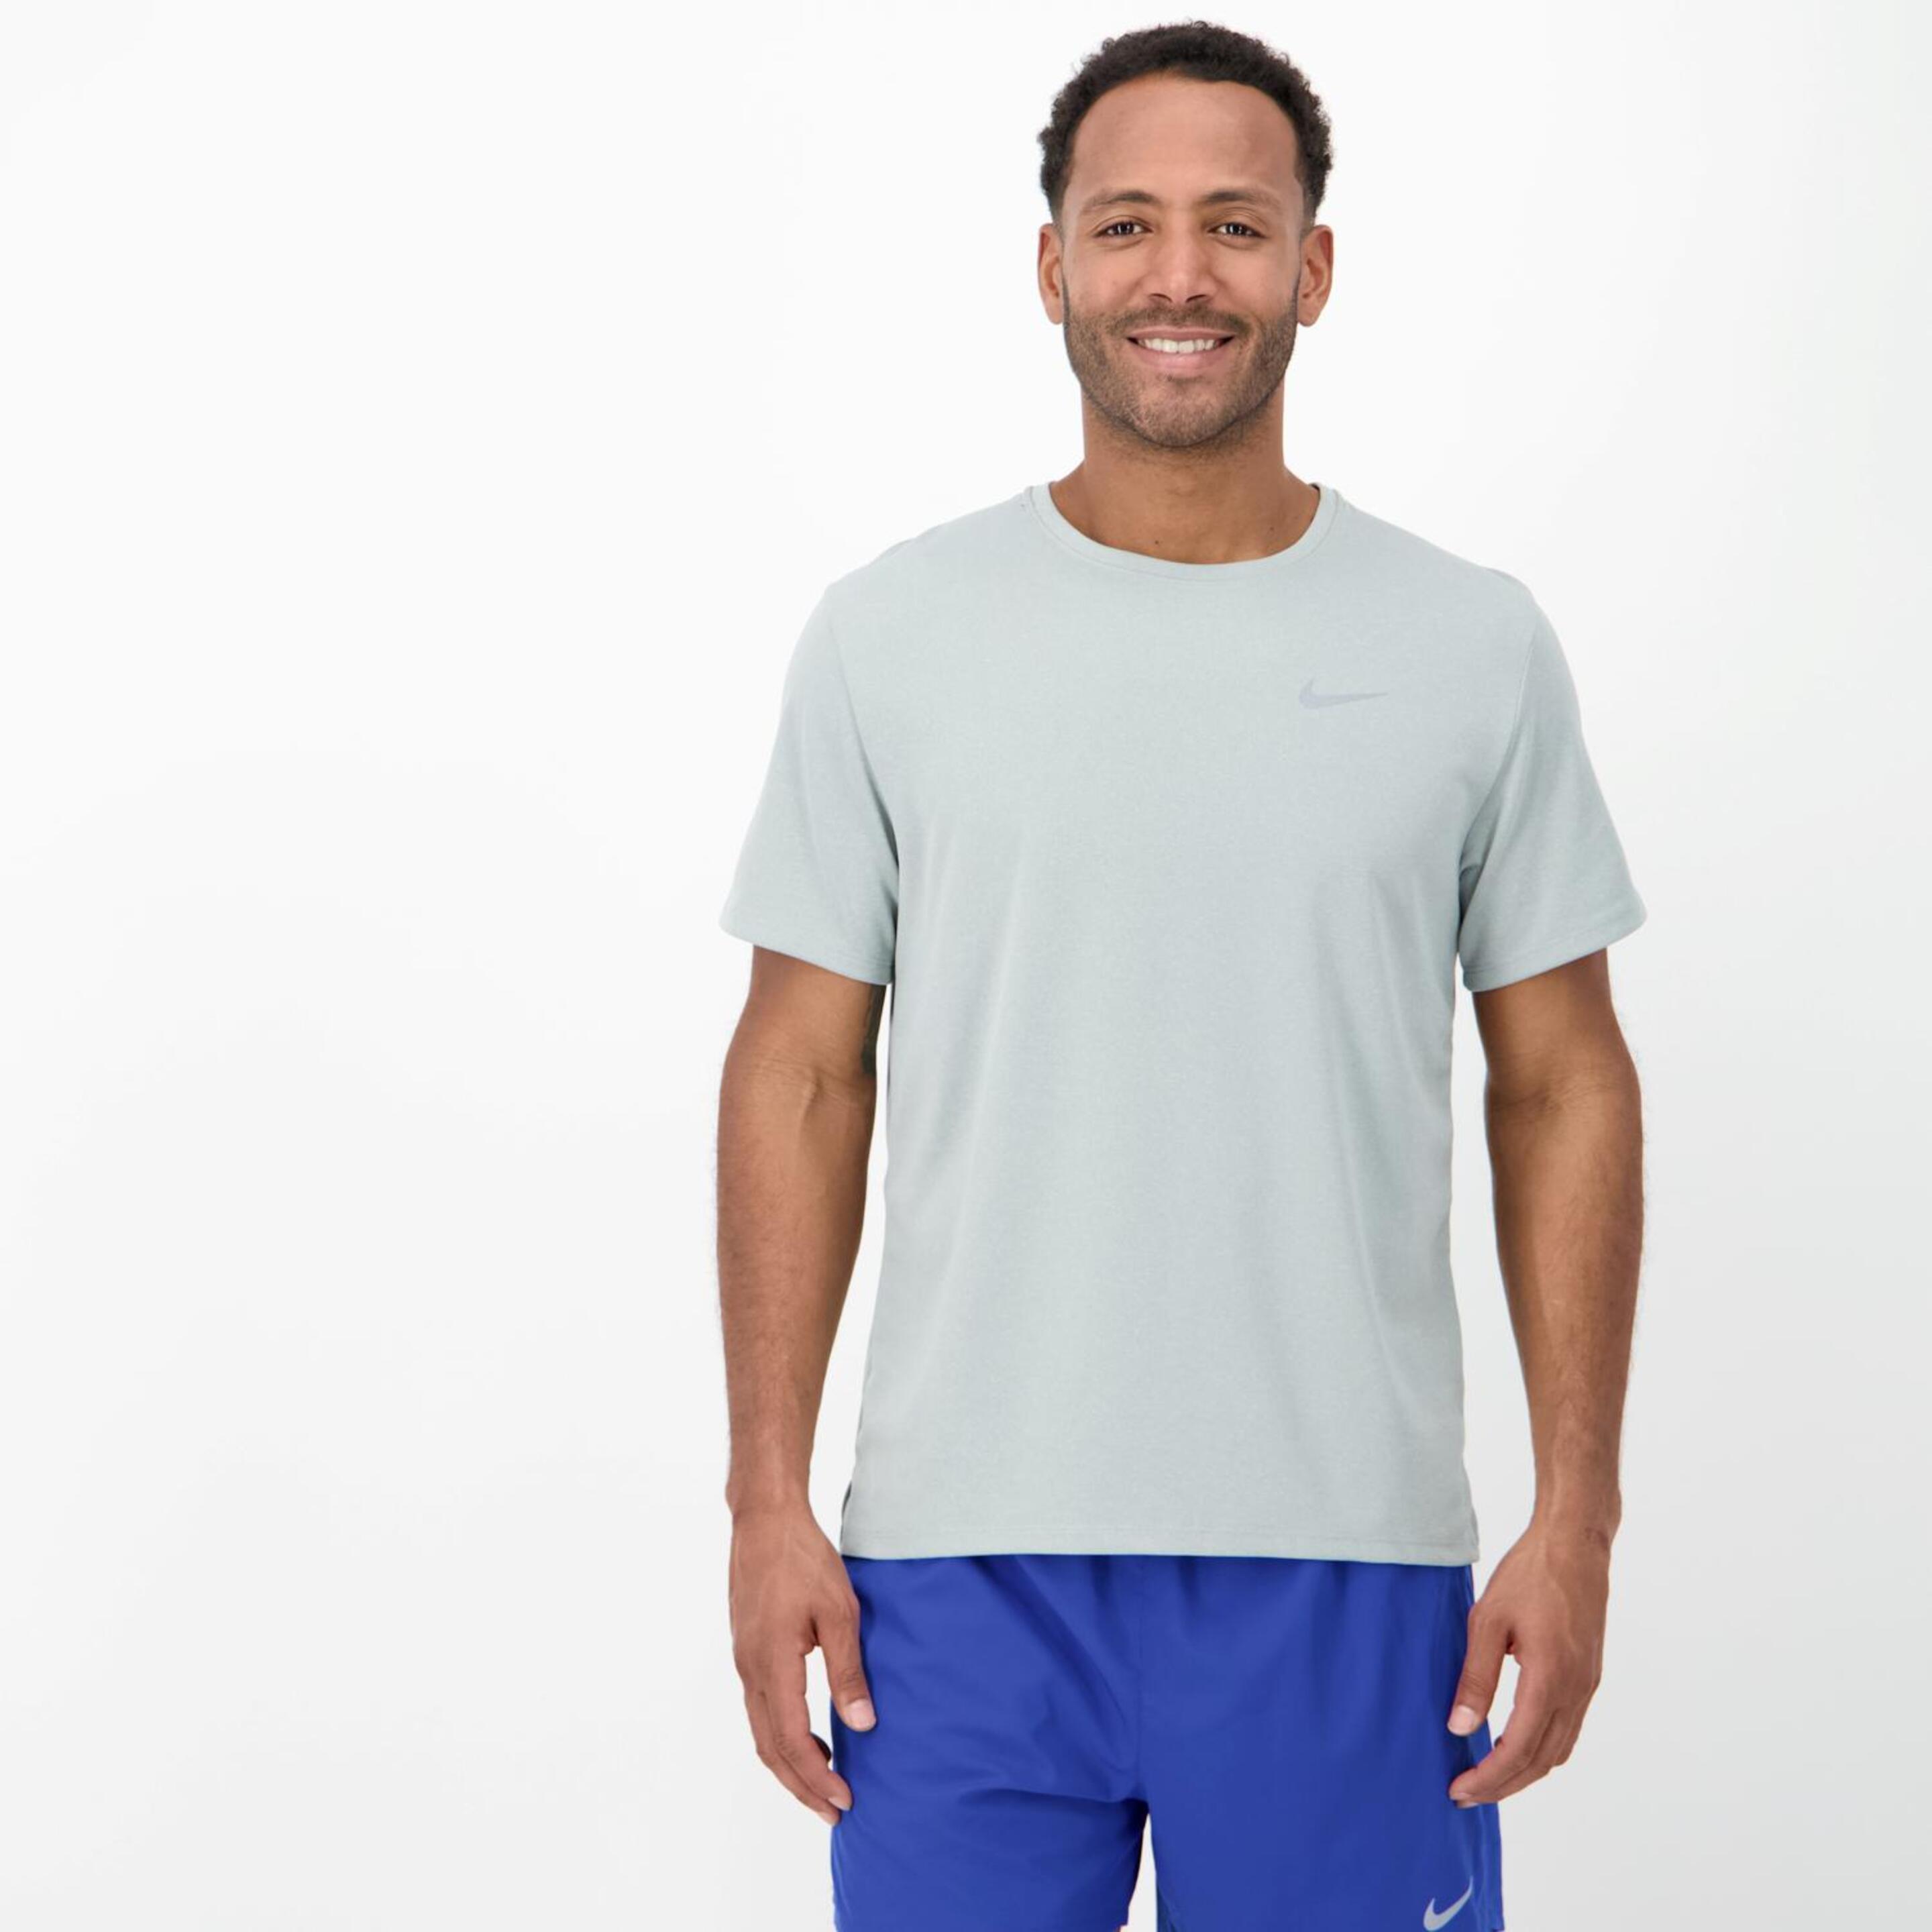 T-shirt Nike - gris - T-shirt Running Homem